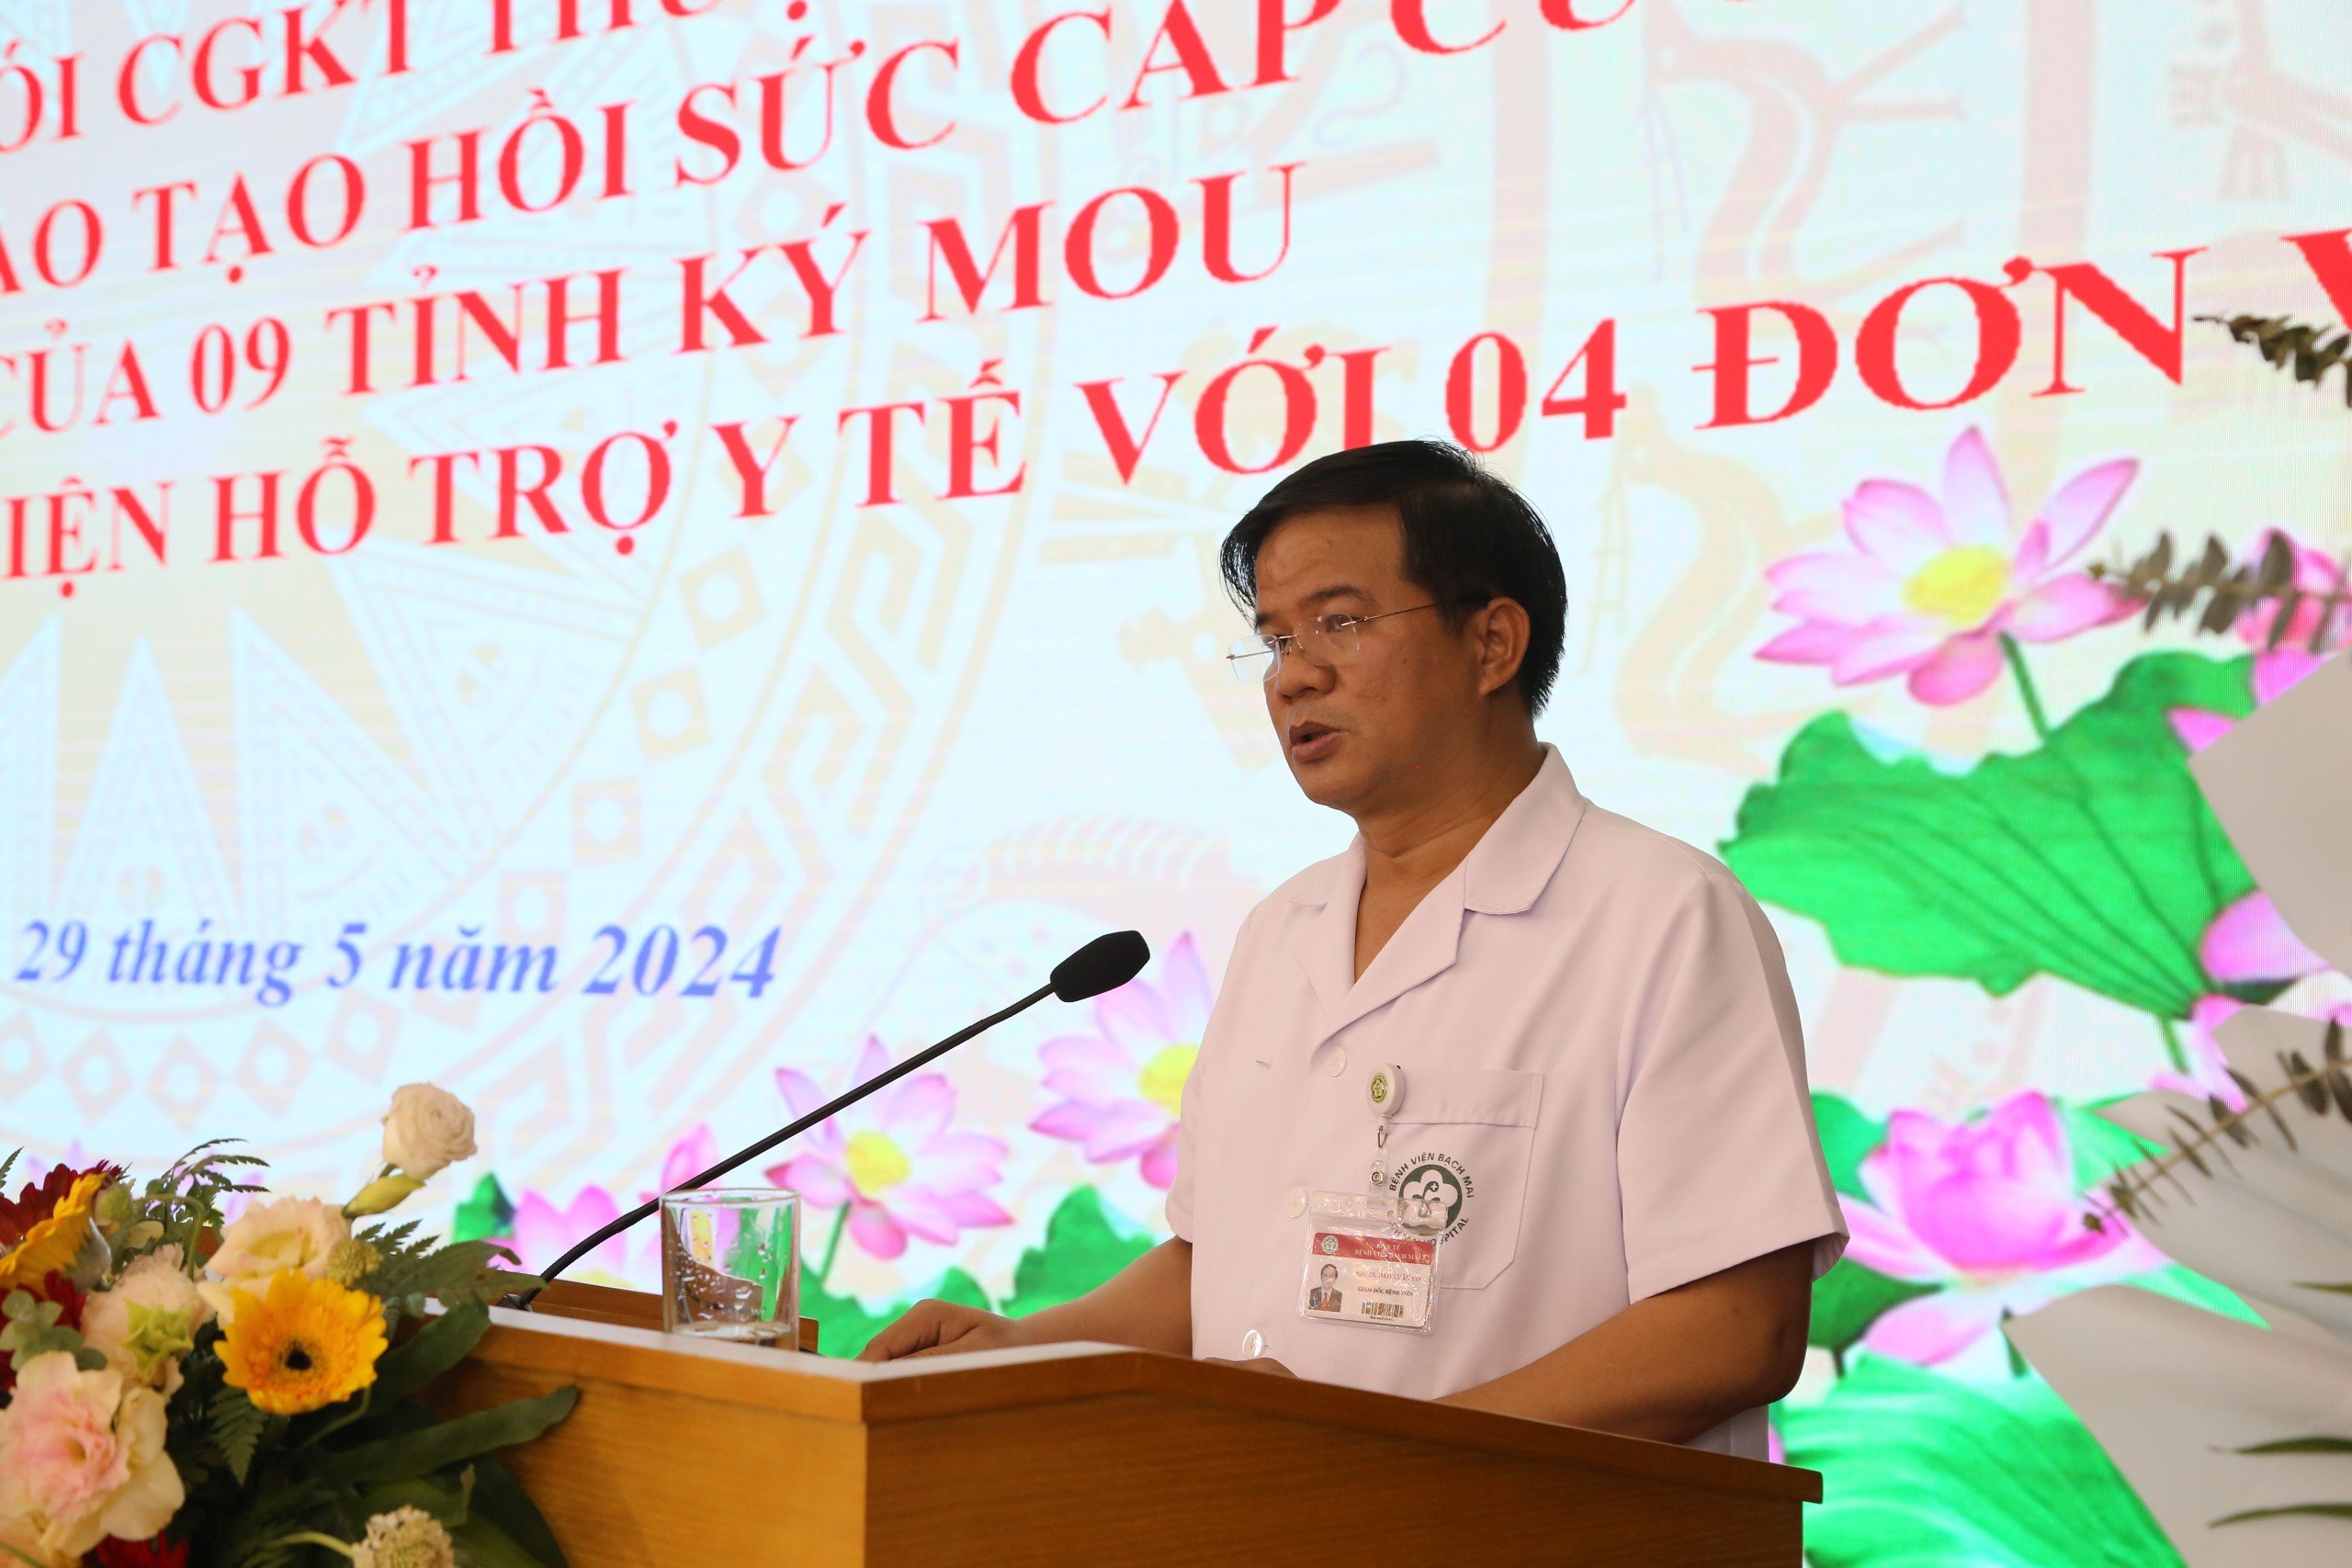 Phó Giáo sư, Tiến sĩ Đào Xuân Cơ - Giám đốc Bệnh viện Bạch Mai phát biểu tại chương trình